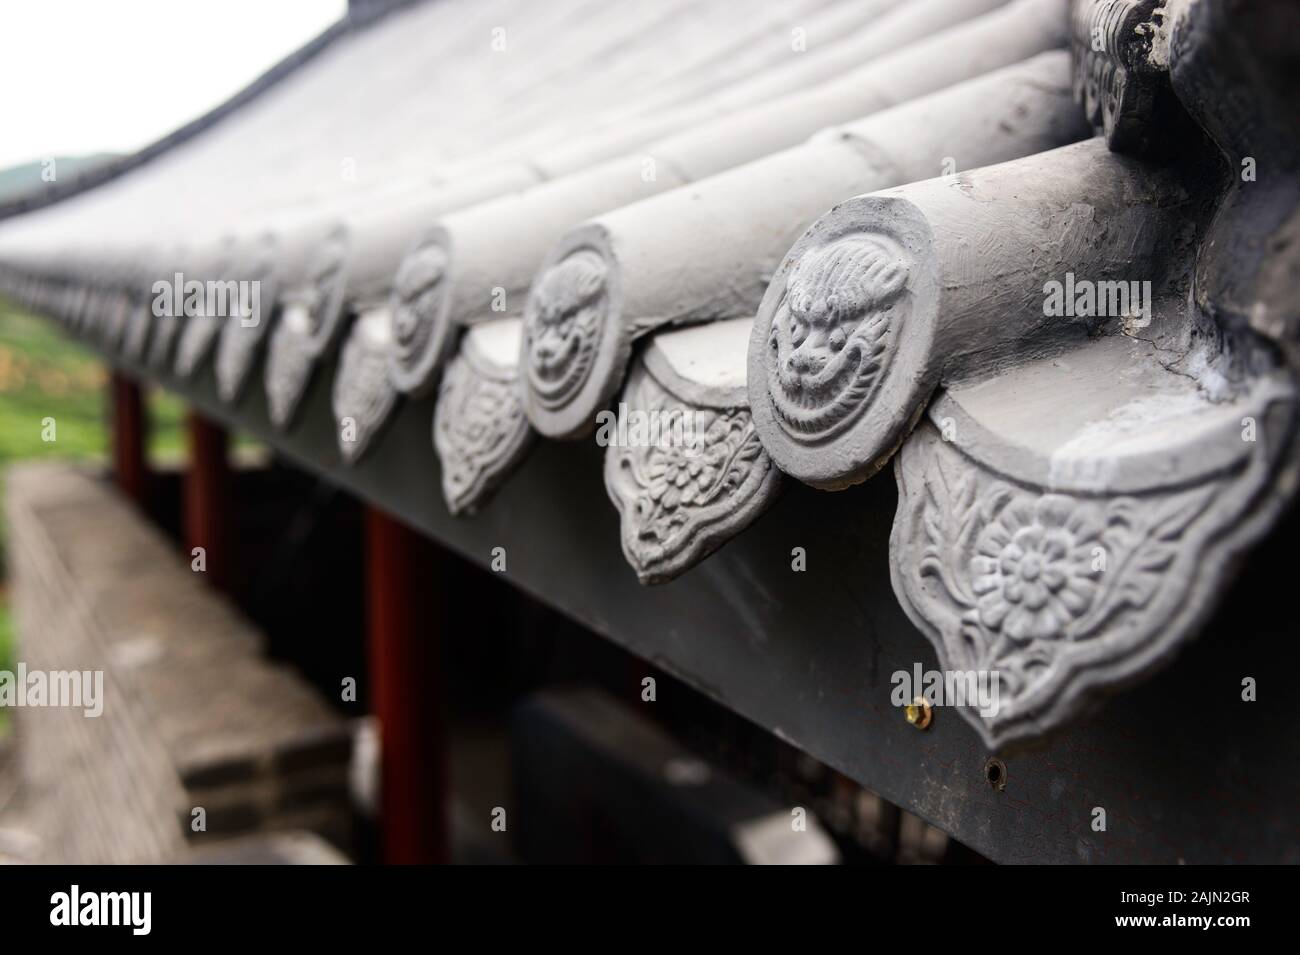 Piastrella cinese bordo tetto caps adornano il tetto di tegole presso il sito di Badaling della Grande Muraglia Cinese. Foto Stock